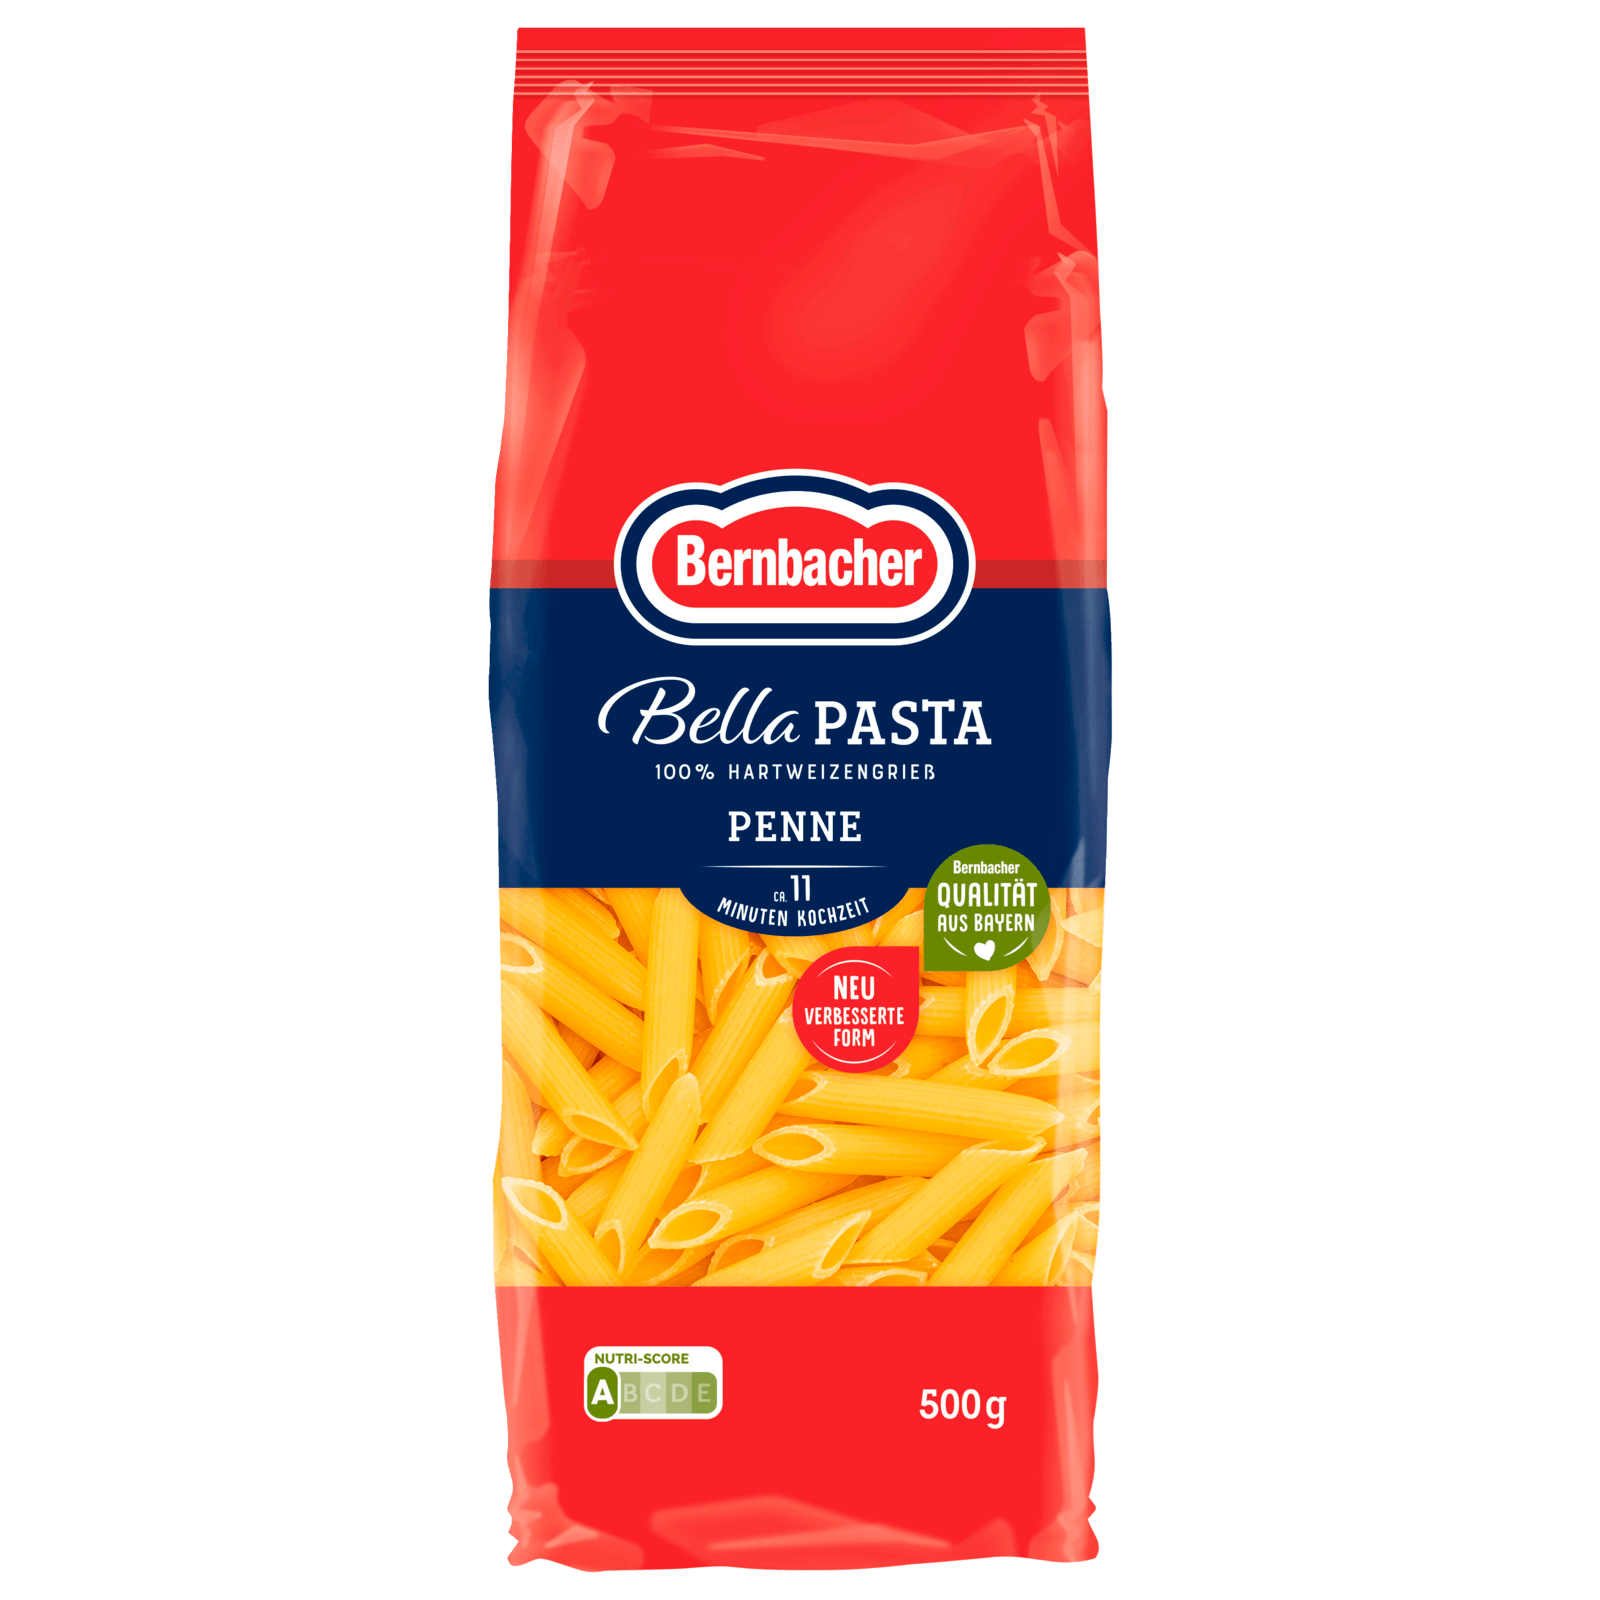 Bernbacher Bella Pasta Pennette 500g  für 1.79 EUR